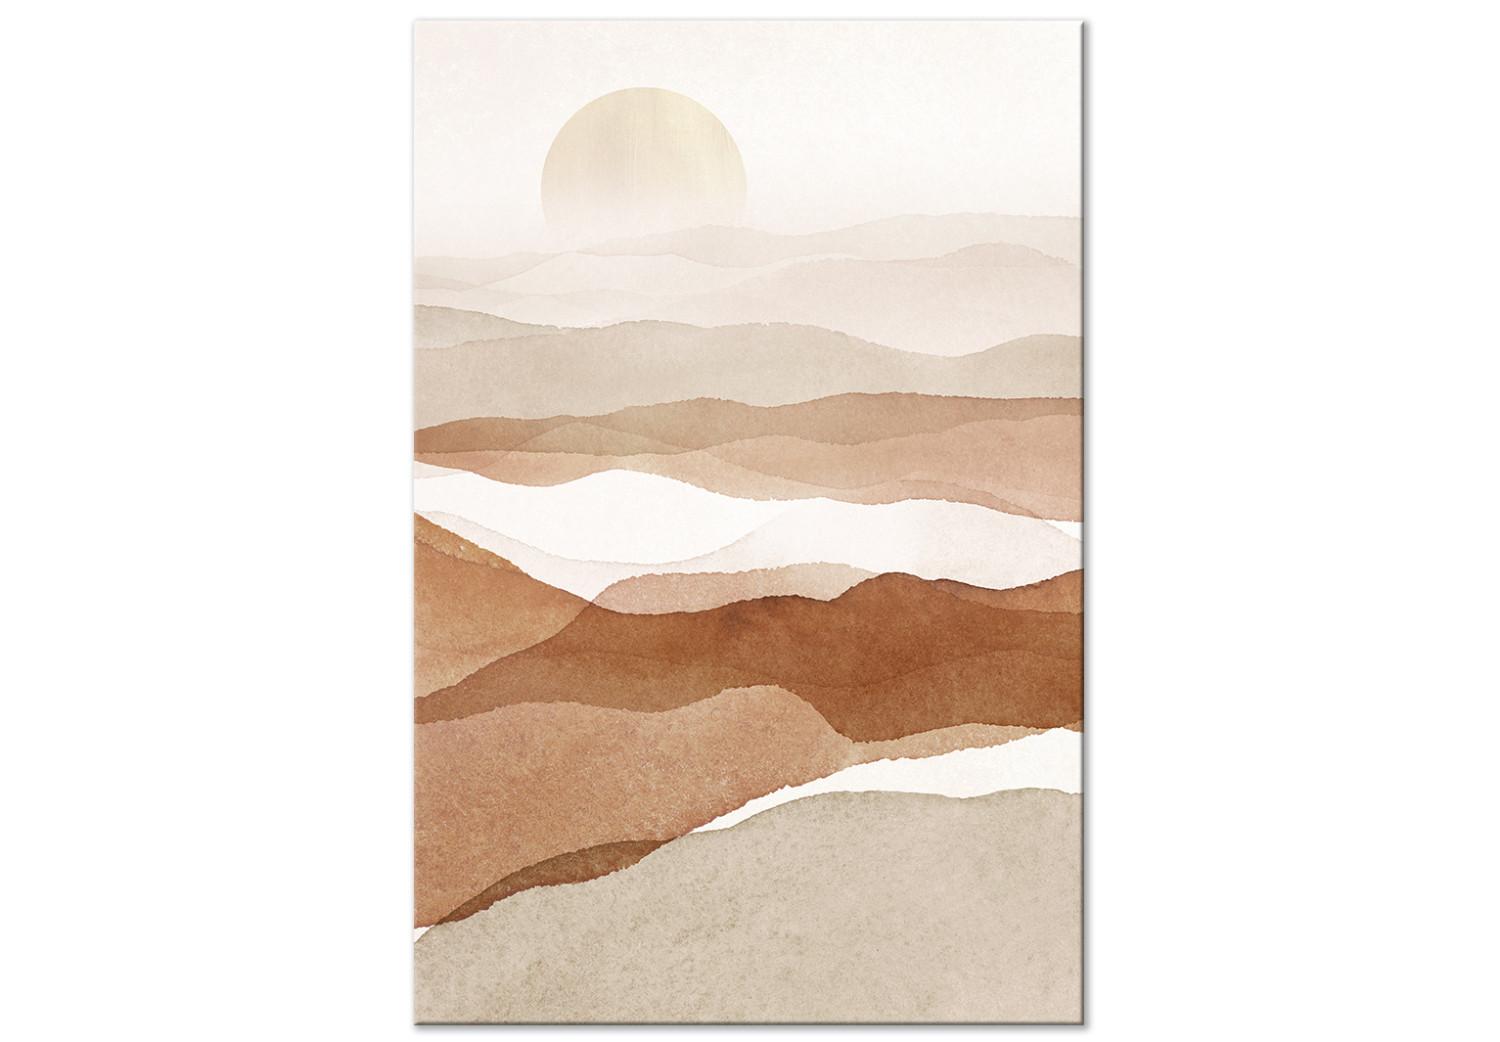 Cuadro Puesta de sol sobre el desierto - paisaje abstracto en estilo boho